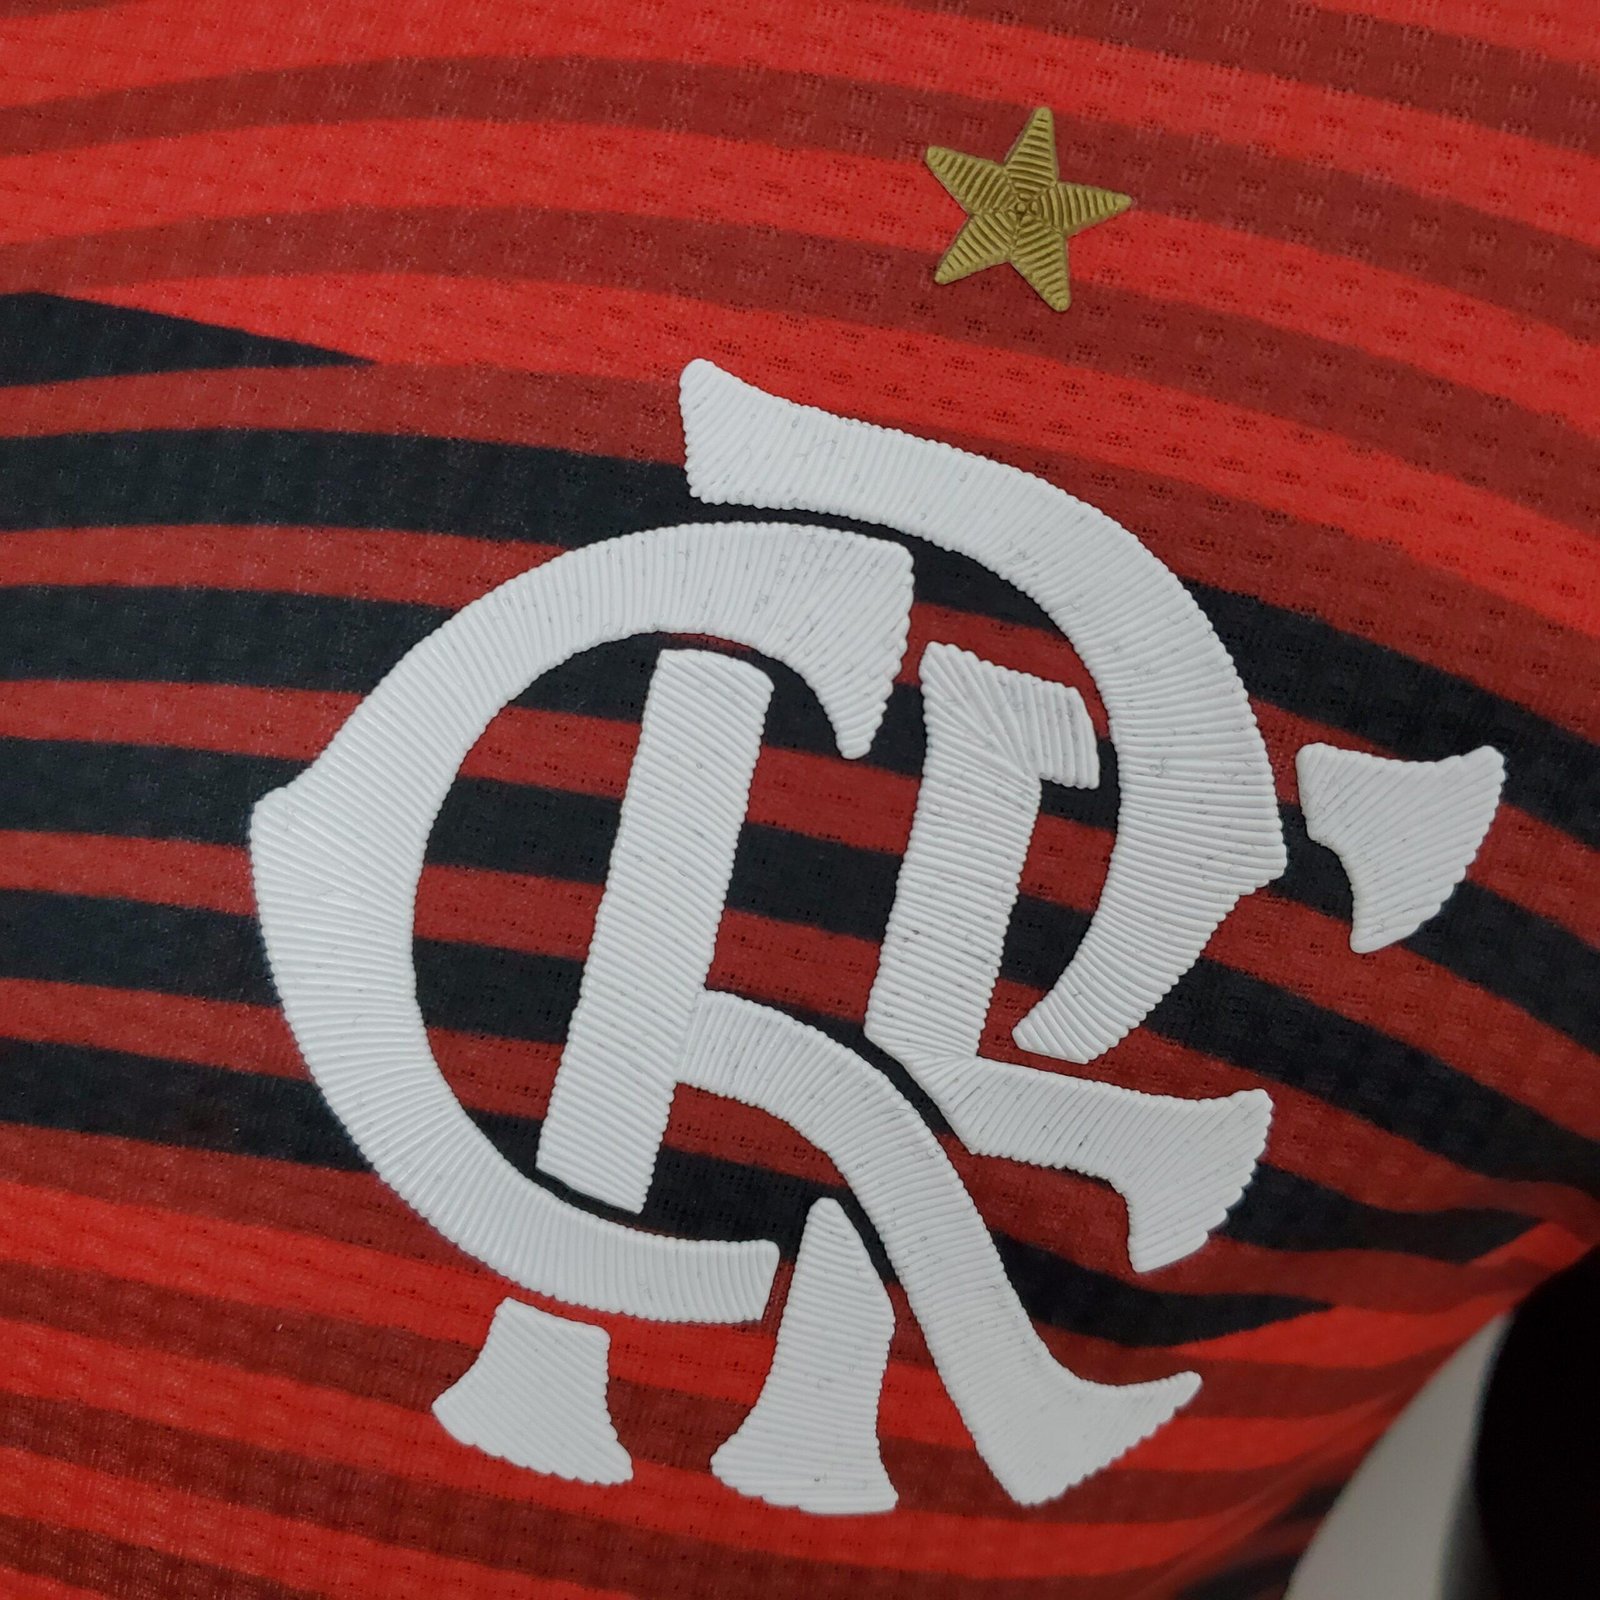 Camisa Flamengo Pré-Jogo 2022/2023 – Preta e Vermelha – Masculina – Todos  os Patrocinadores – KS Sports – Camisas de Times e Seleções